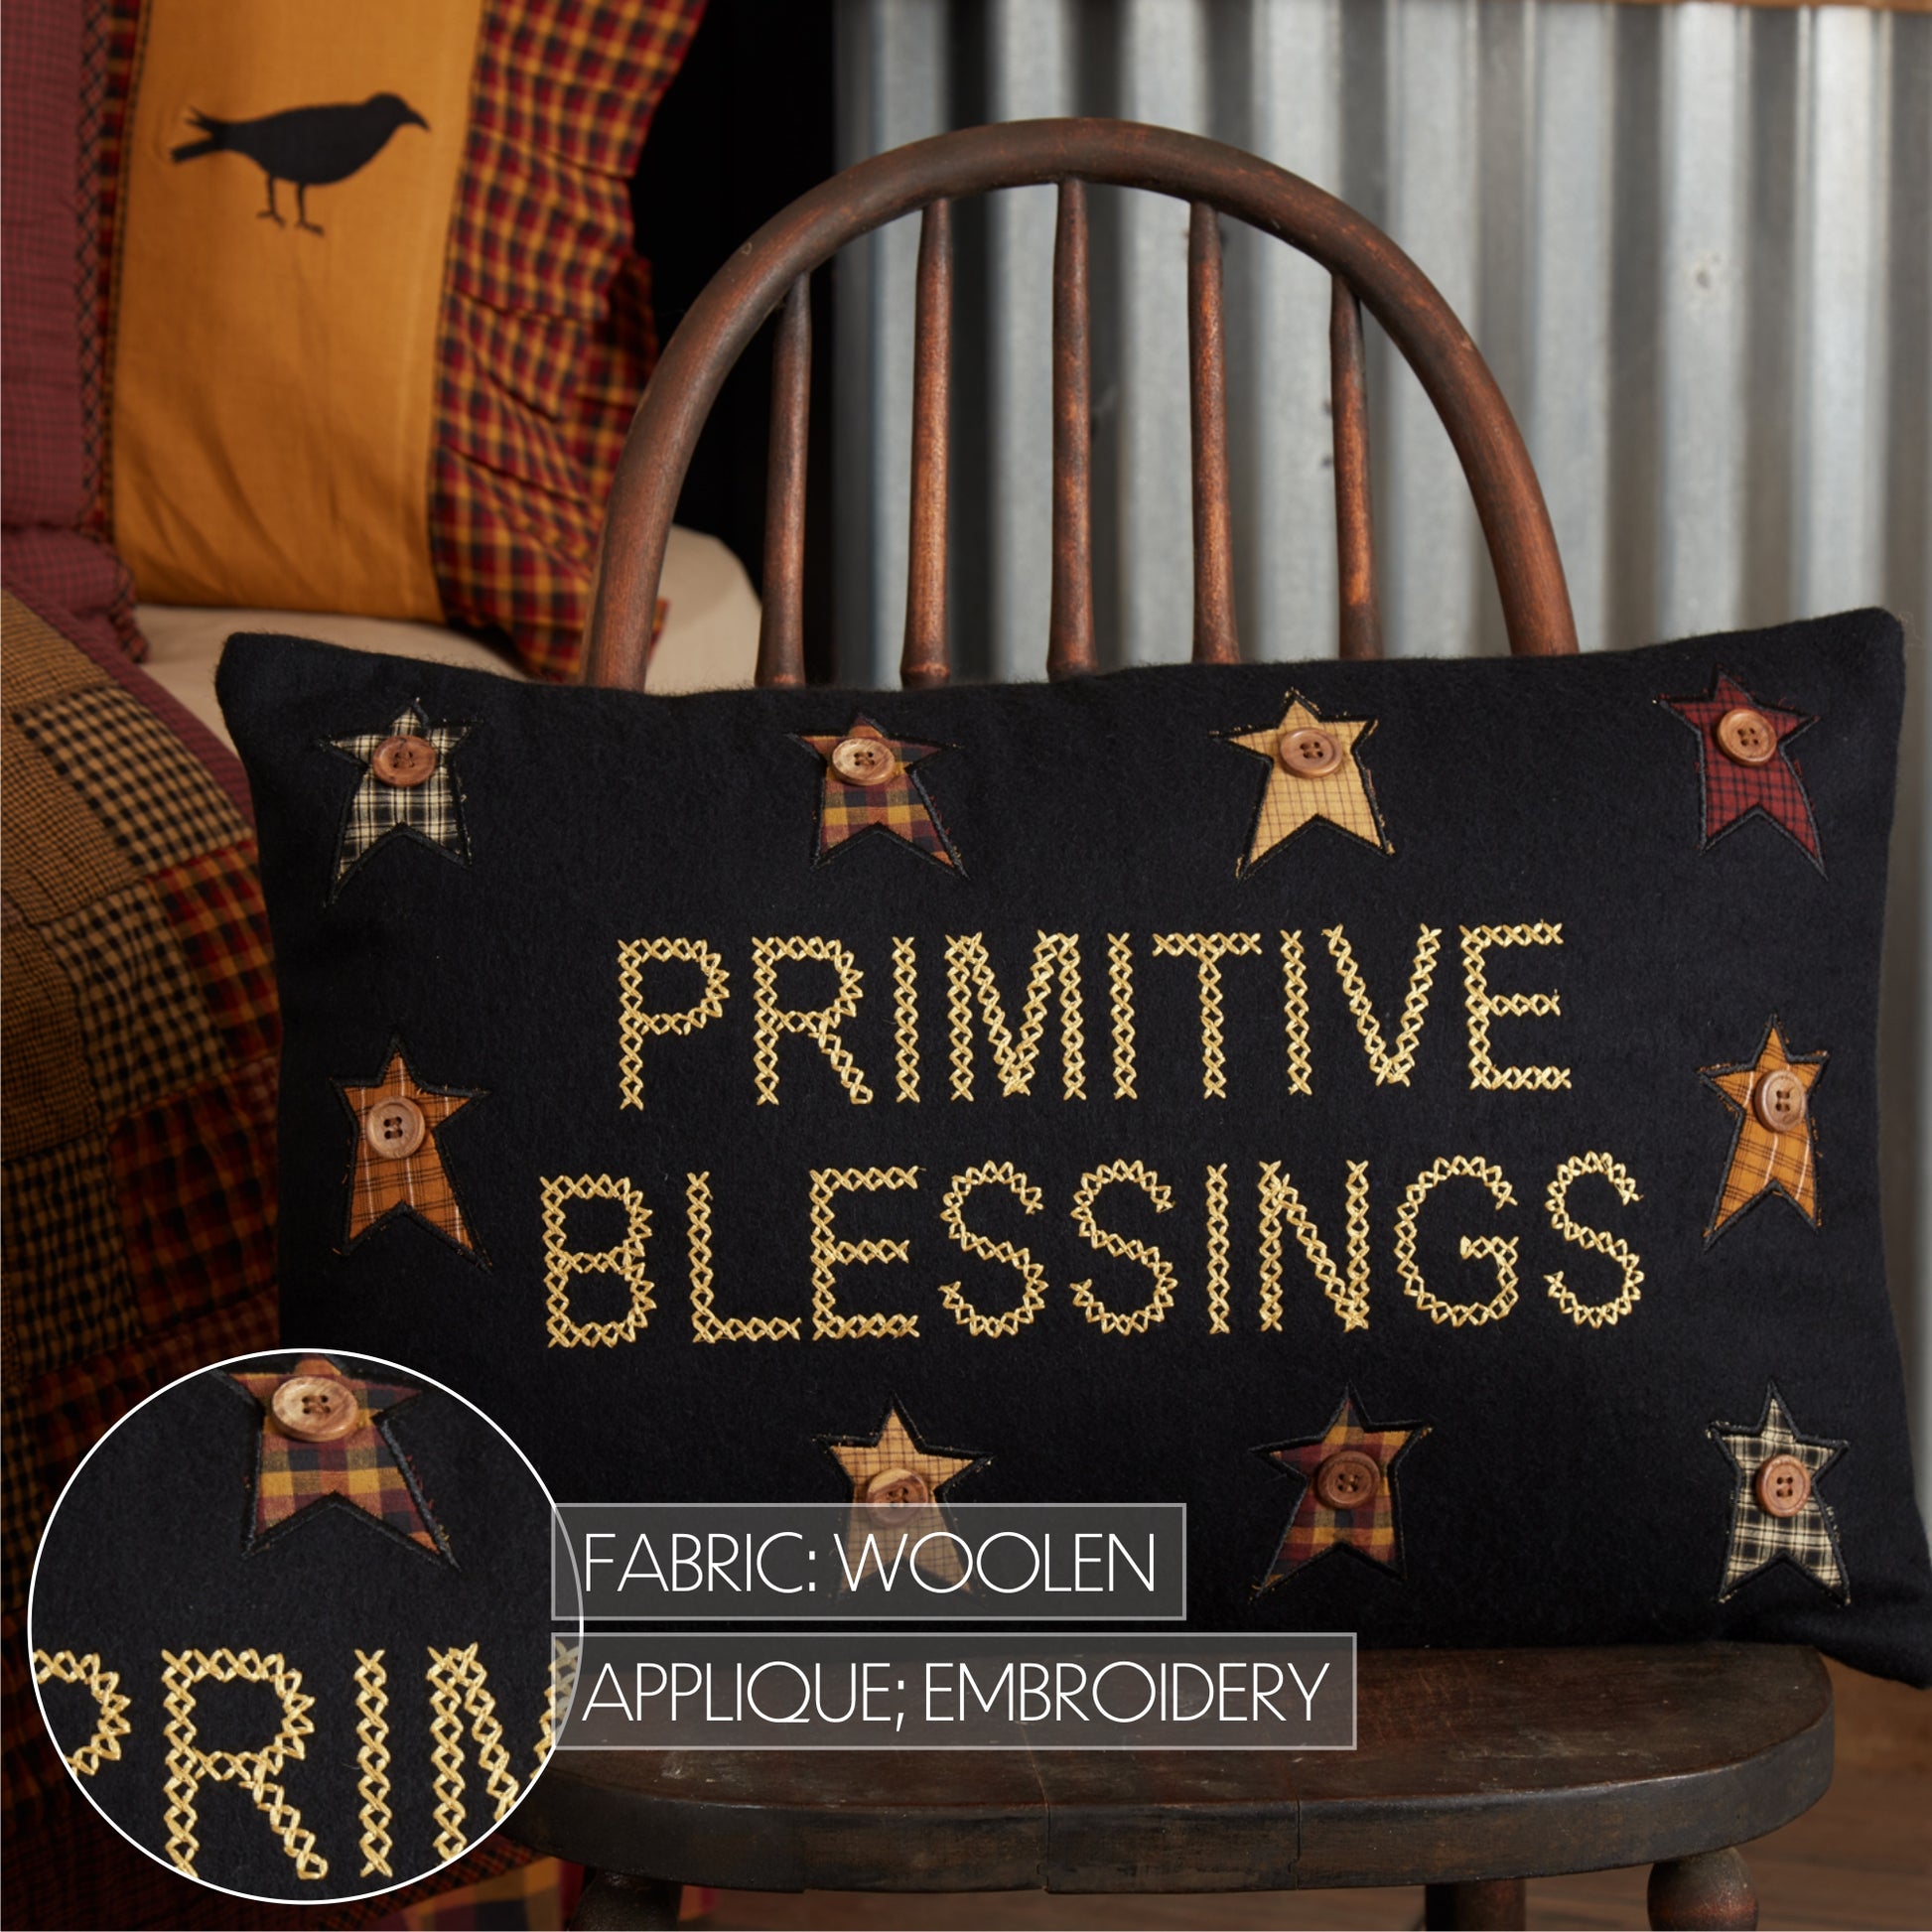 *Primitive Blessings Pillow